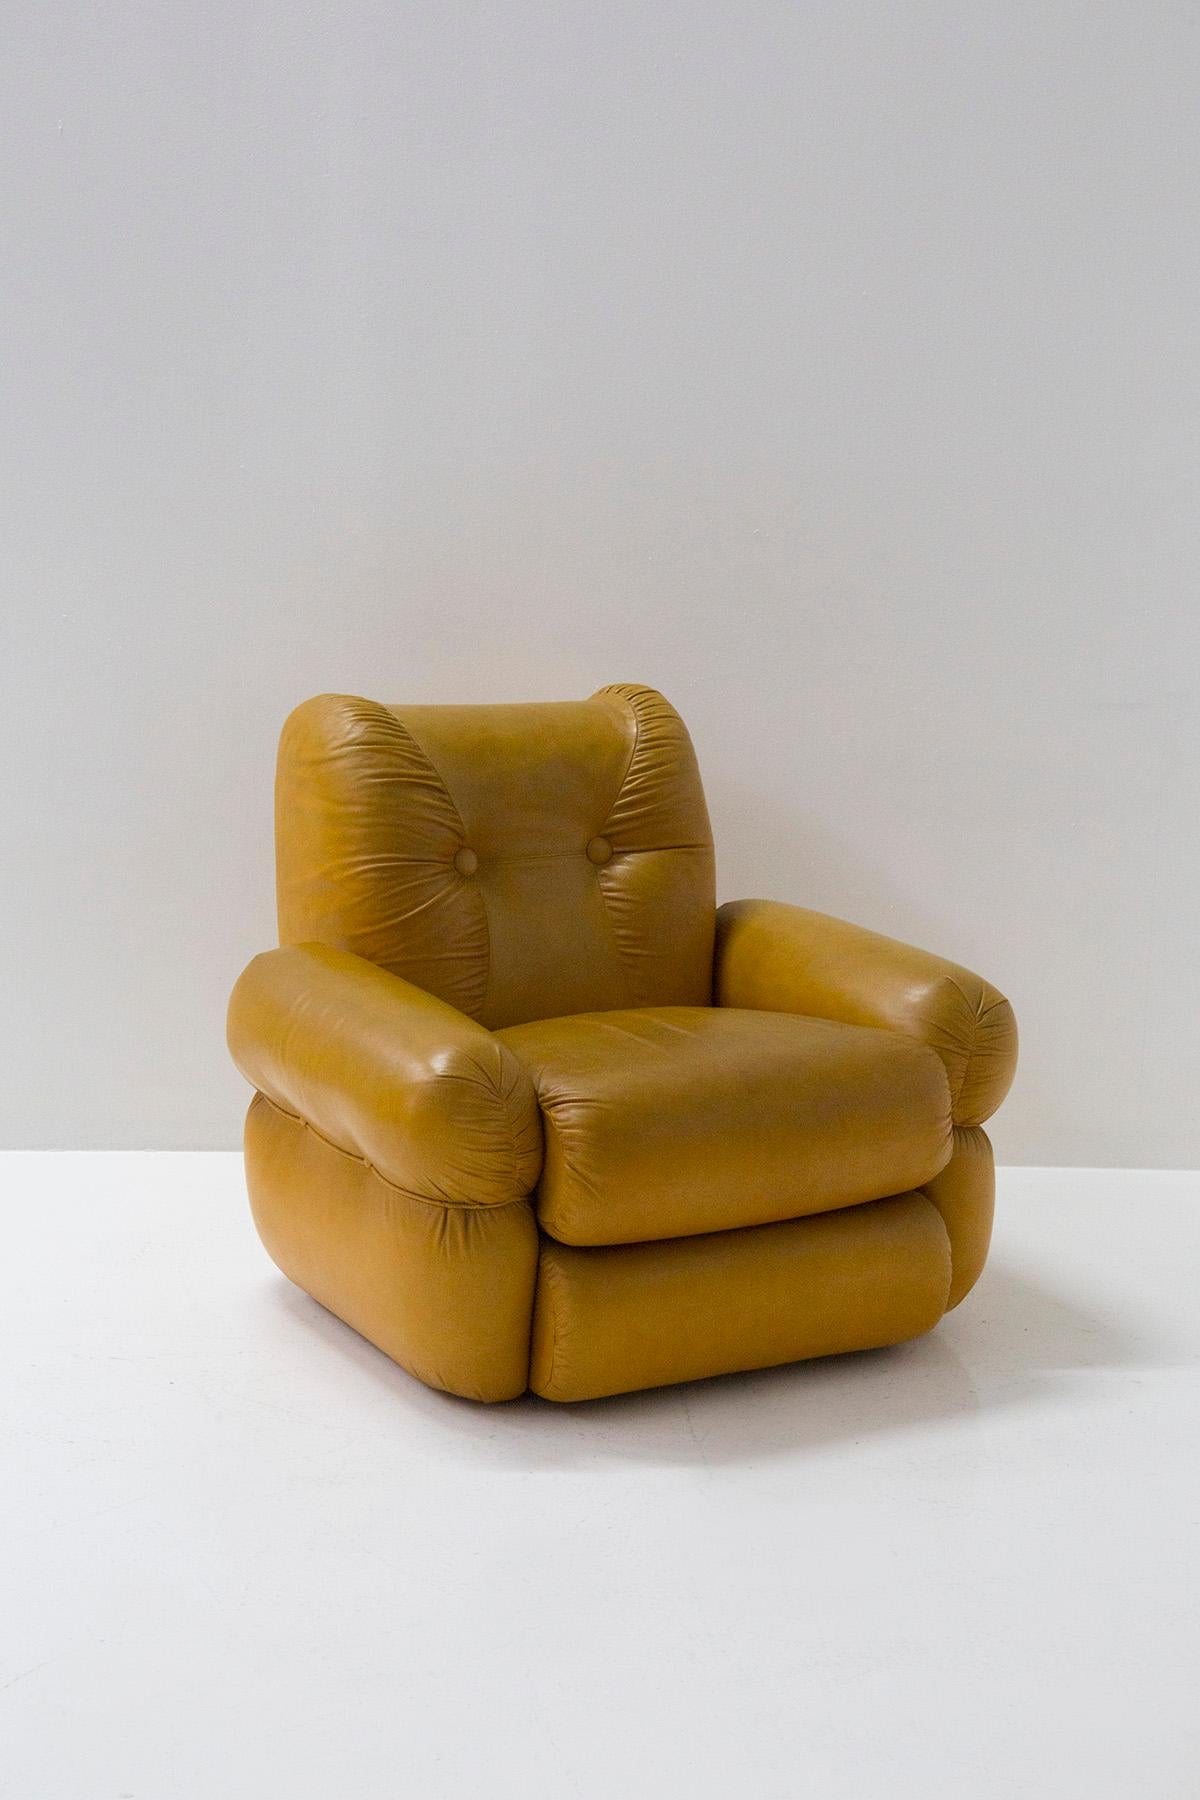 Faites un saut dans le passé avec notre remarquable ensemble de fauteuils en cuir italien vintage. Ces fauteuils exquis, fabriqués en Italie dans les années 1970, capturent l'essence de cette époque emblématique. Avec leur design épuré, proche de